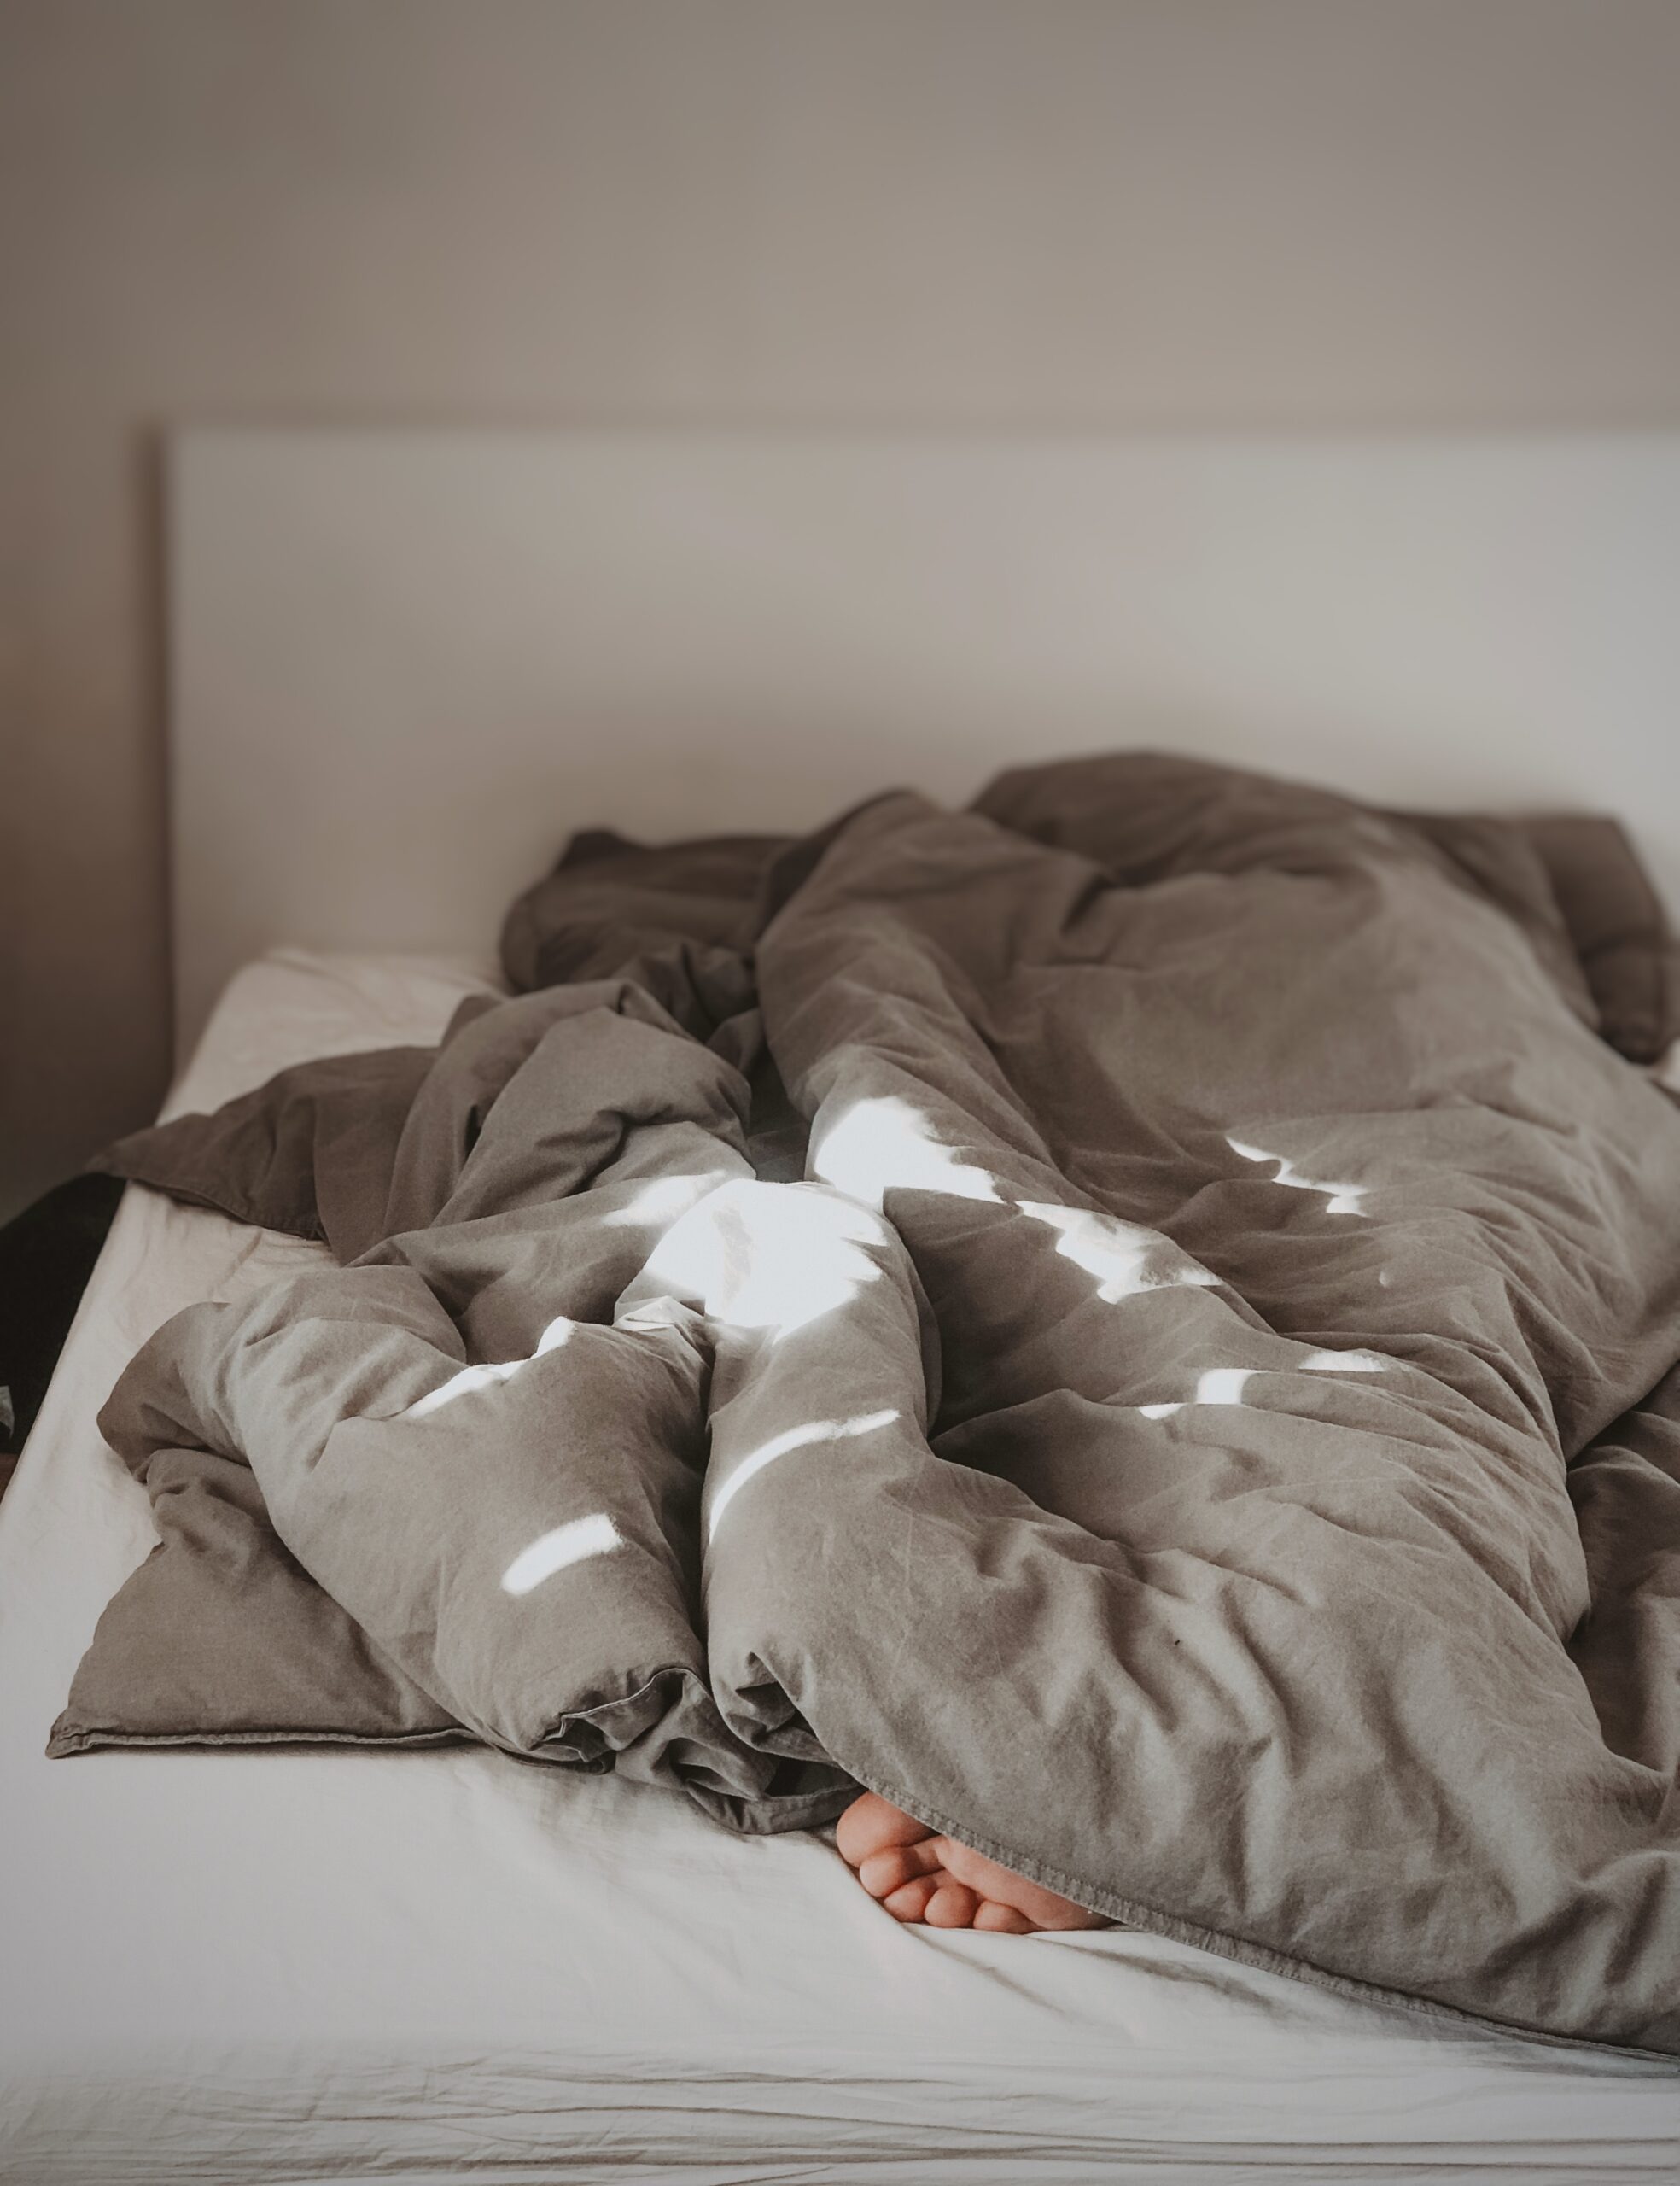 Keine Guten-Morgen-Sprüche in Sicht: Mensch versteckt sich unter Bettdecke.